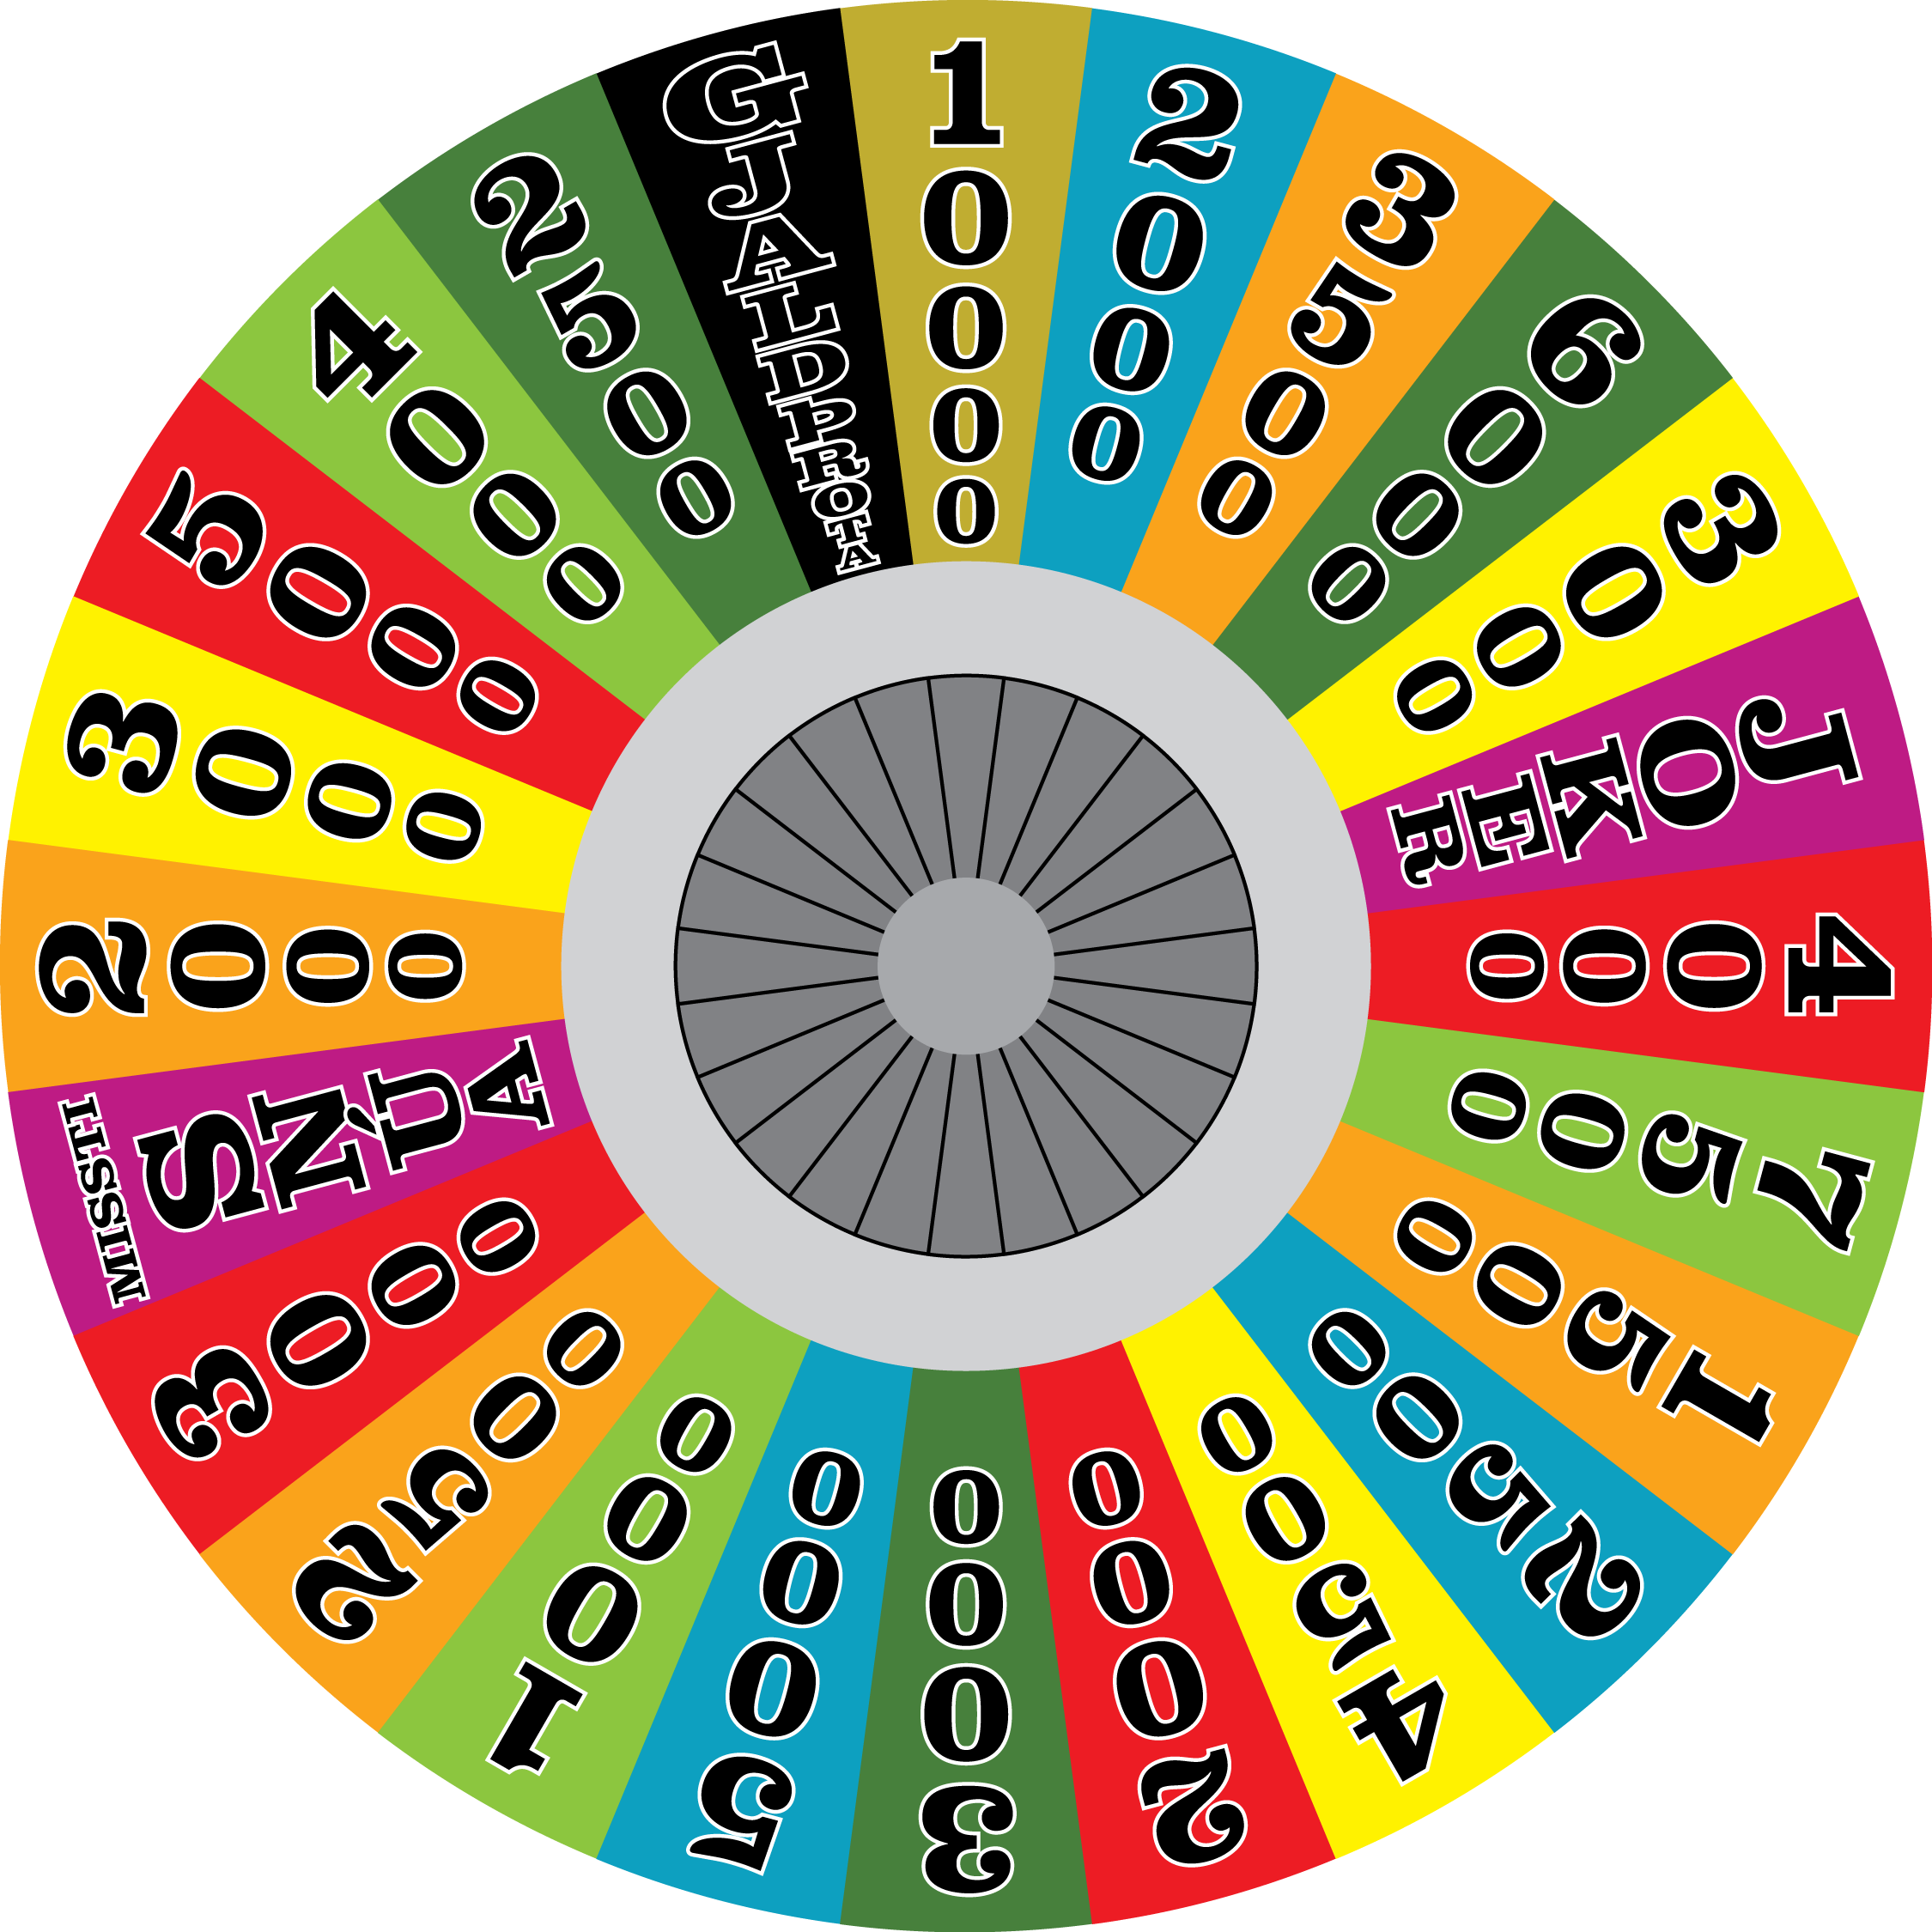 Wheel of Fortune Iceland Round 1 by designerboy7 on DeviantArt2250 x 2250